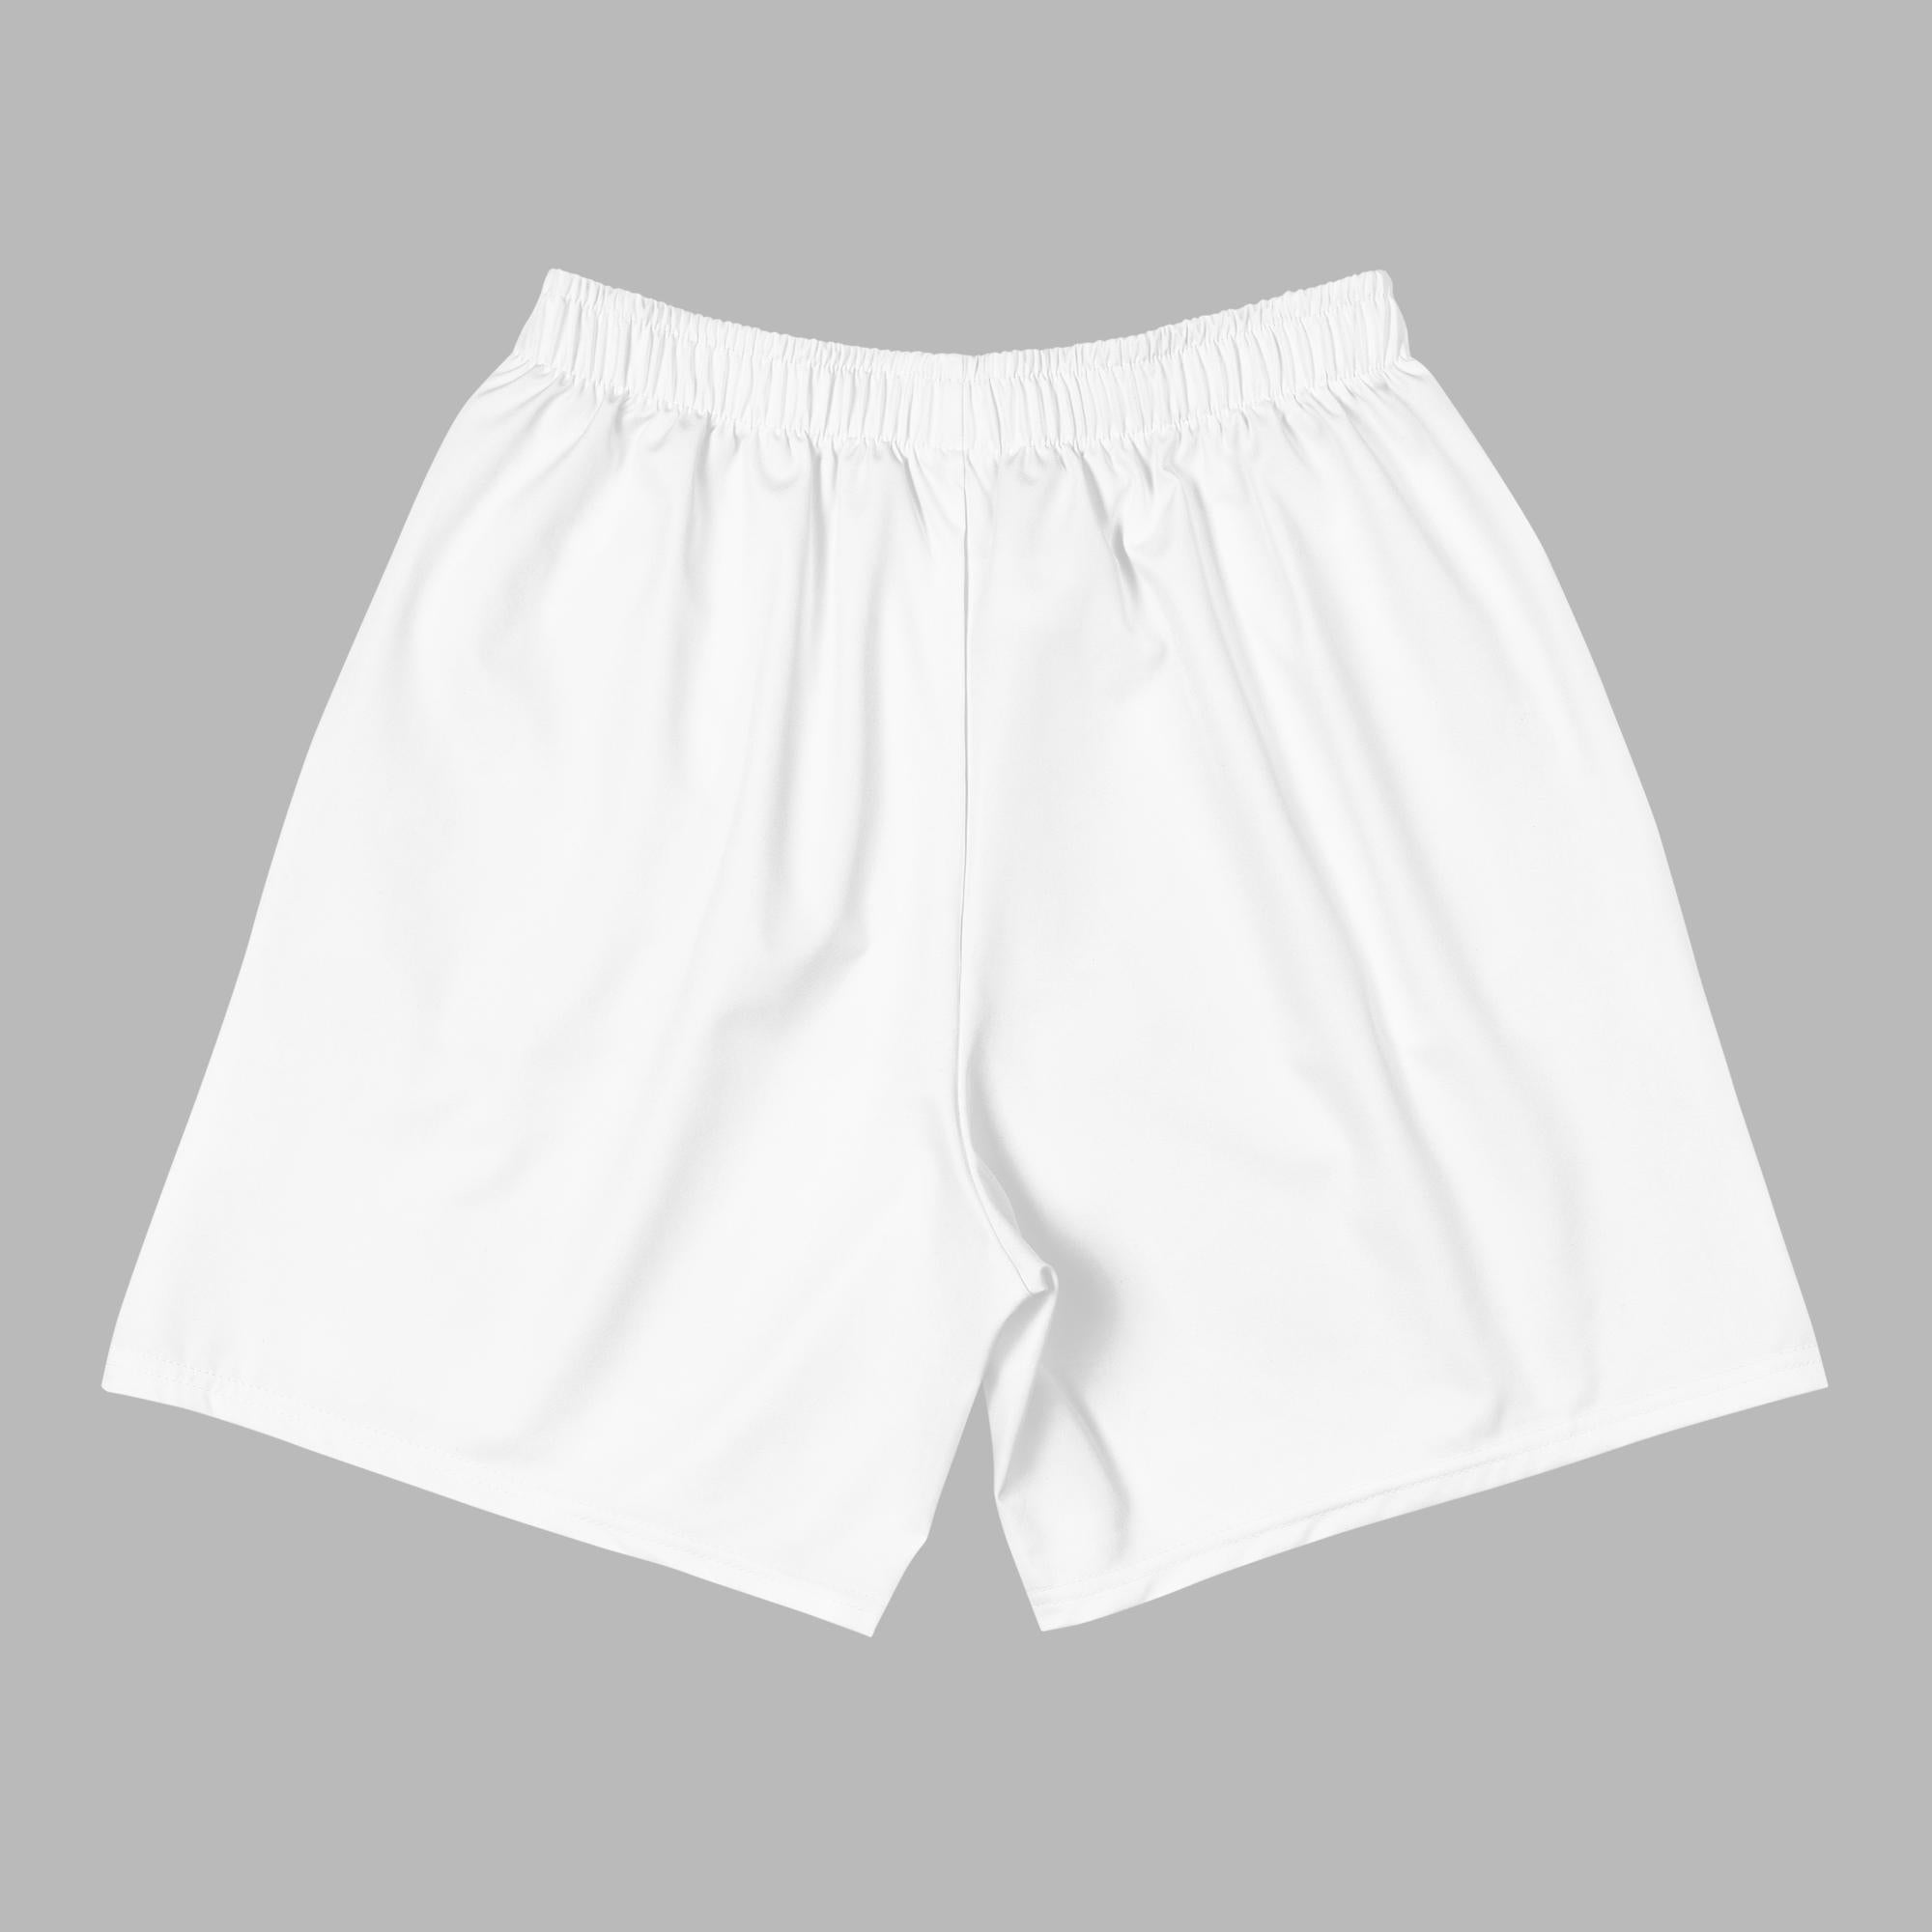 Shorts deportivos reciclados para hombre - Blanco